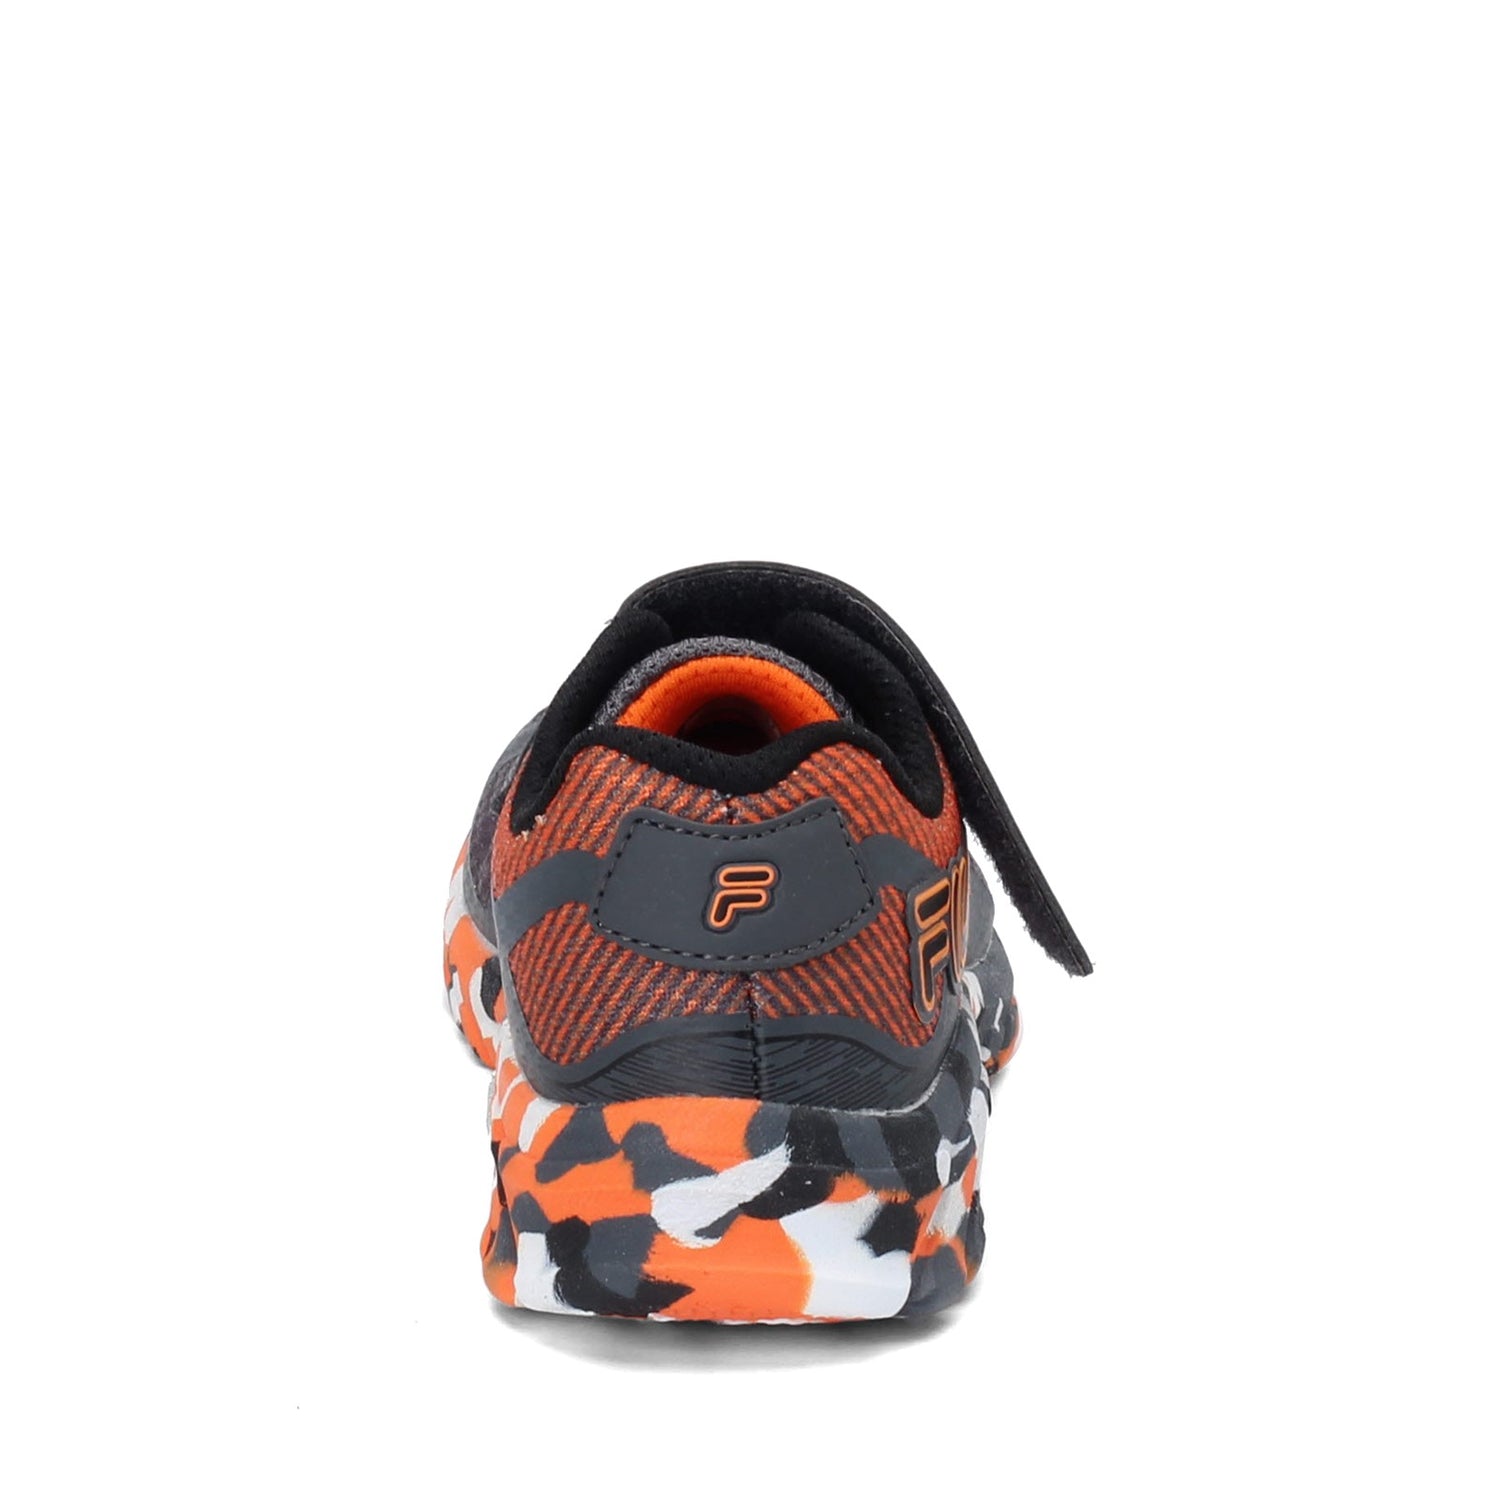 Peltz Shoes  Boy's Fila Primeforce 4 Strap Sneaker - Little Kid & Big Kid GREY ORANGE 3RM01006-054